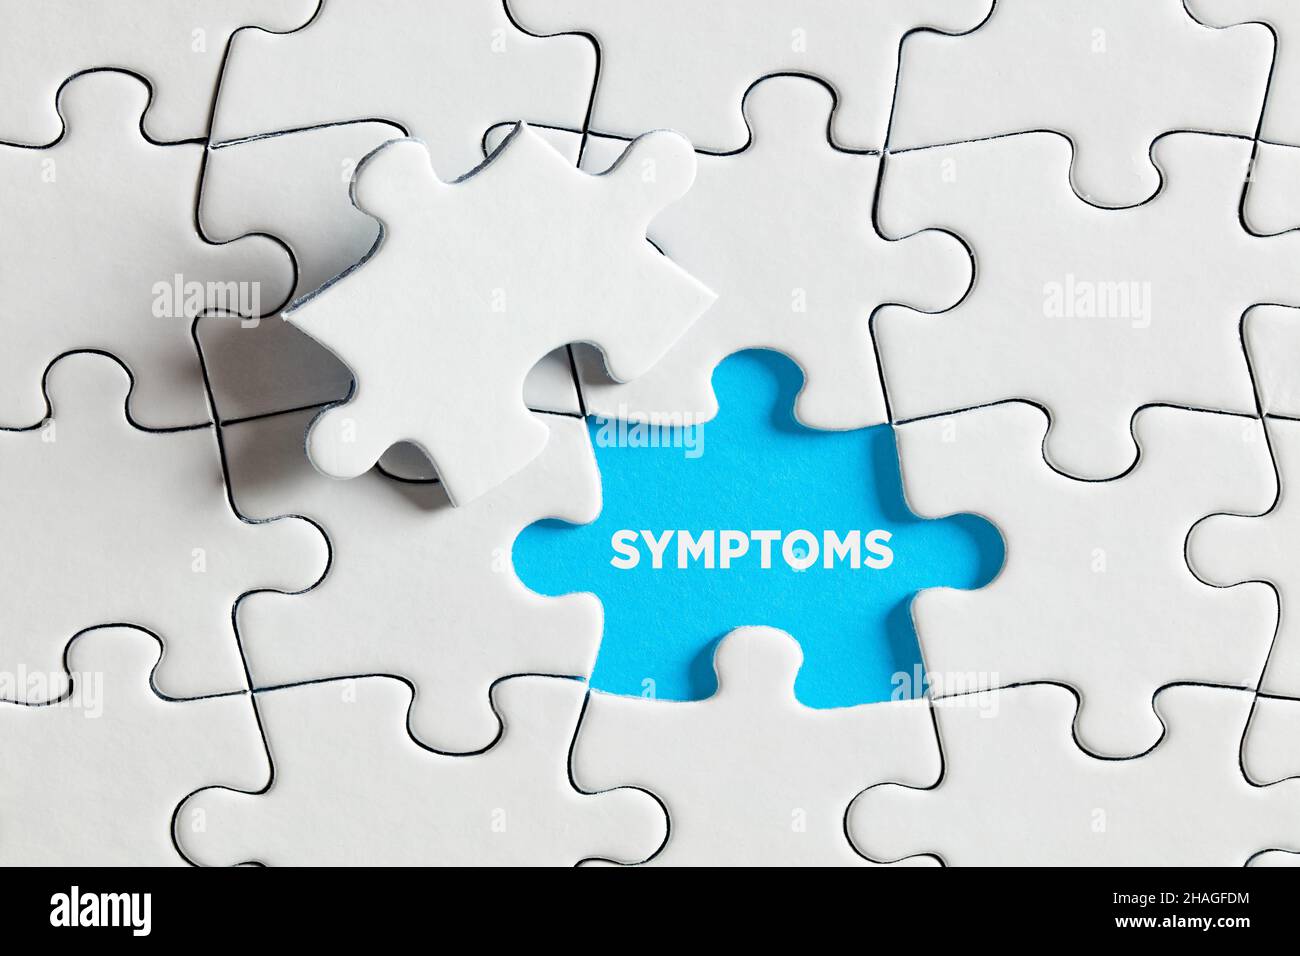 Um die zugrunde liegenden Symptome eines Krankheitskonzepts aufzudecken oder zu entdecken. Das Wort Symptome auf blau fehlende Puzzleteil. Stockfoto